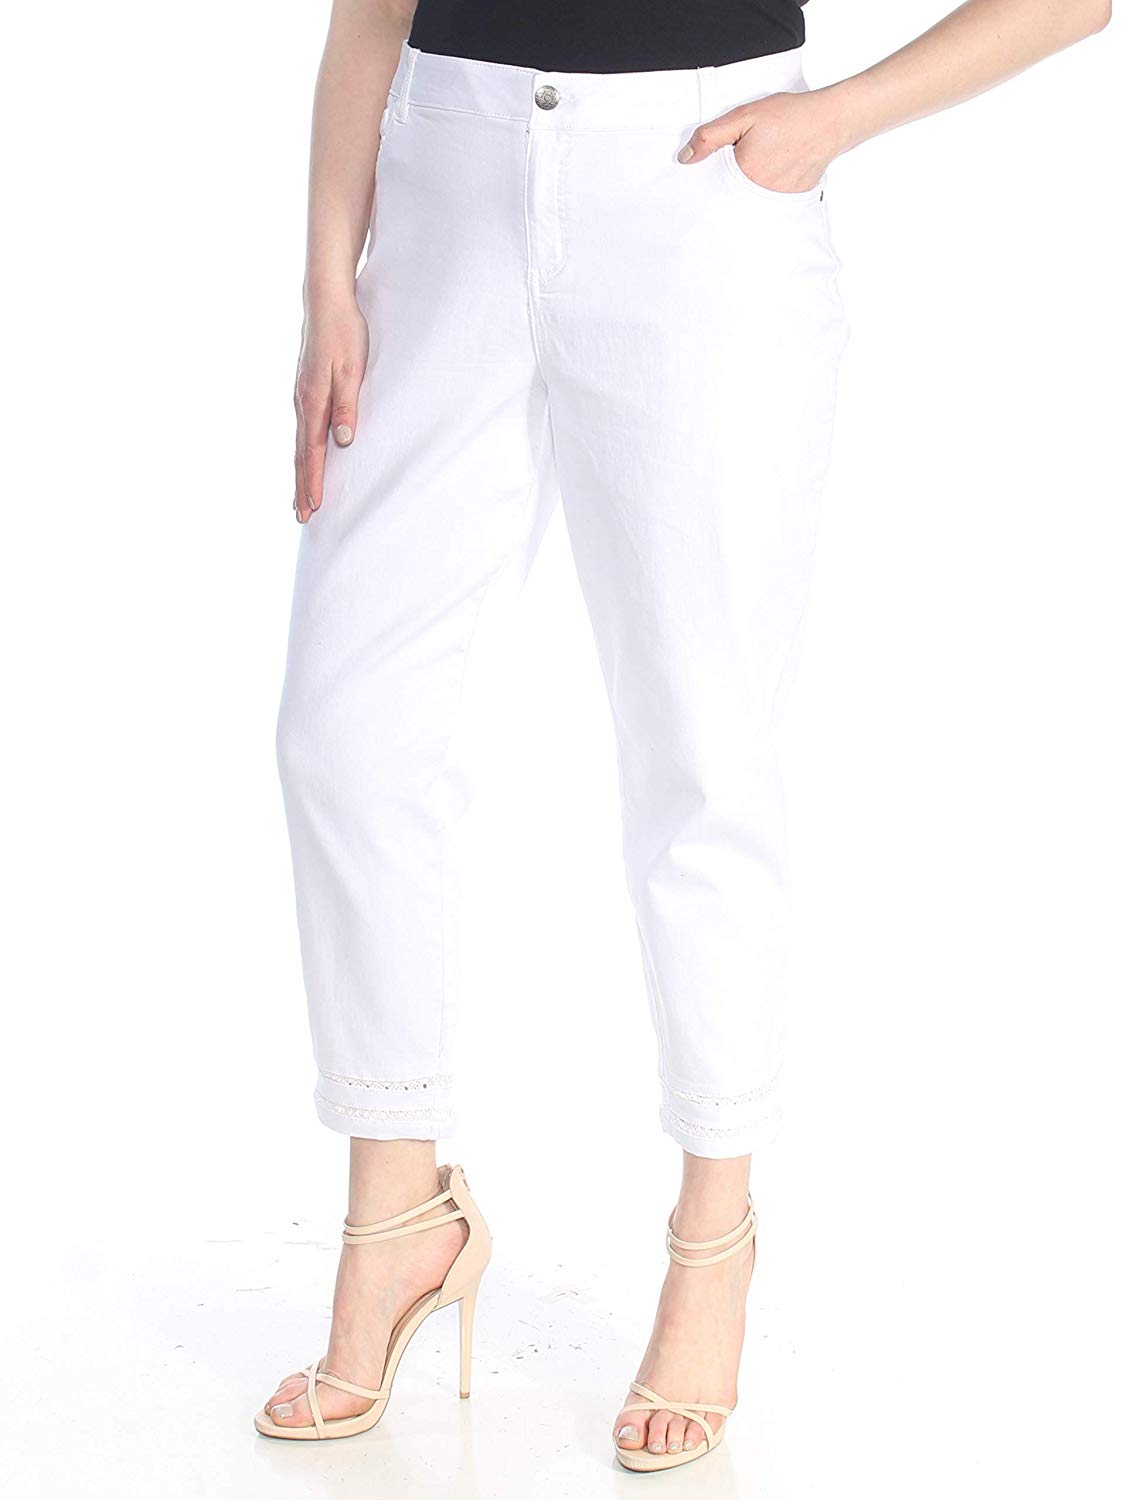 Style & Co Crochet-Cuff Capri Pants (Bright White, 18)